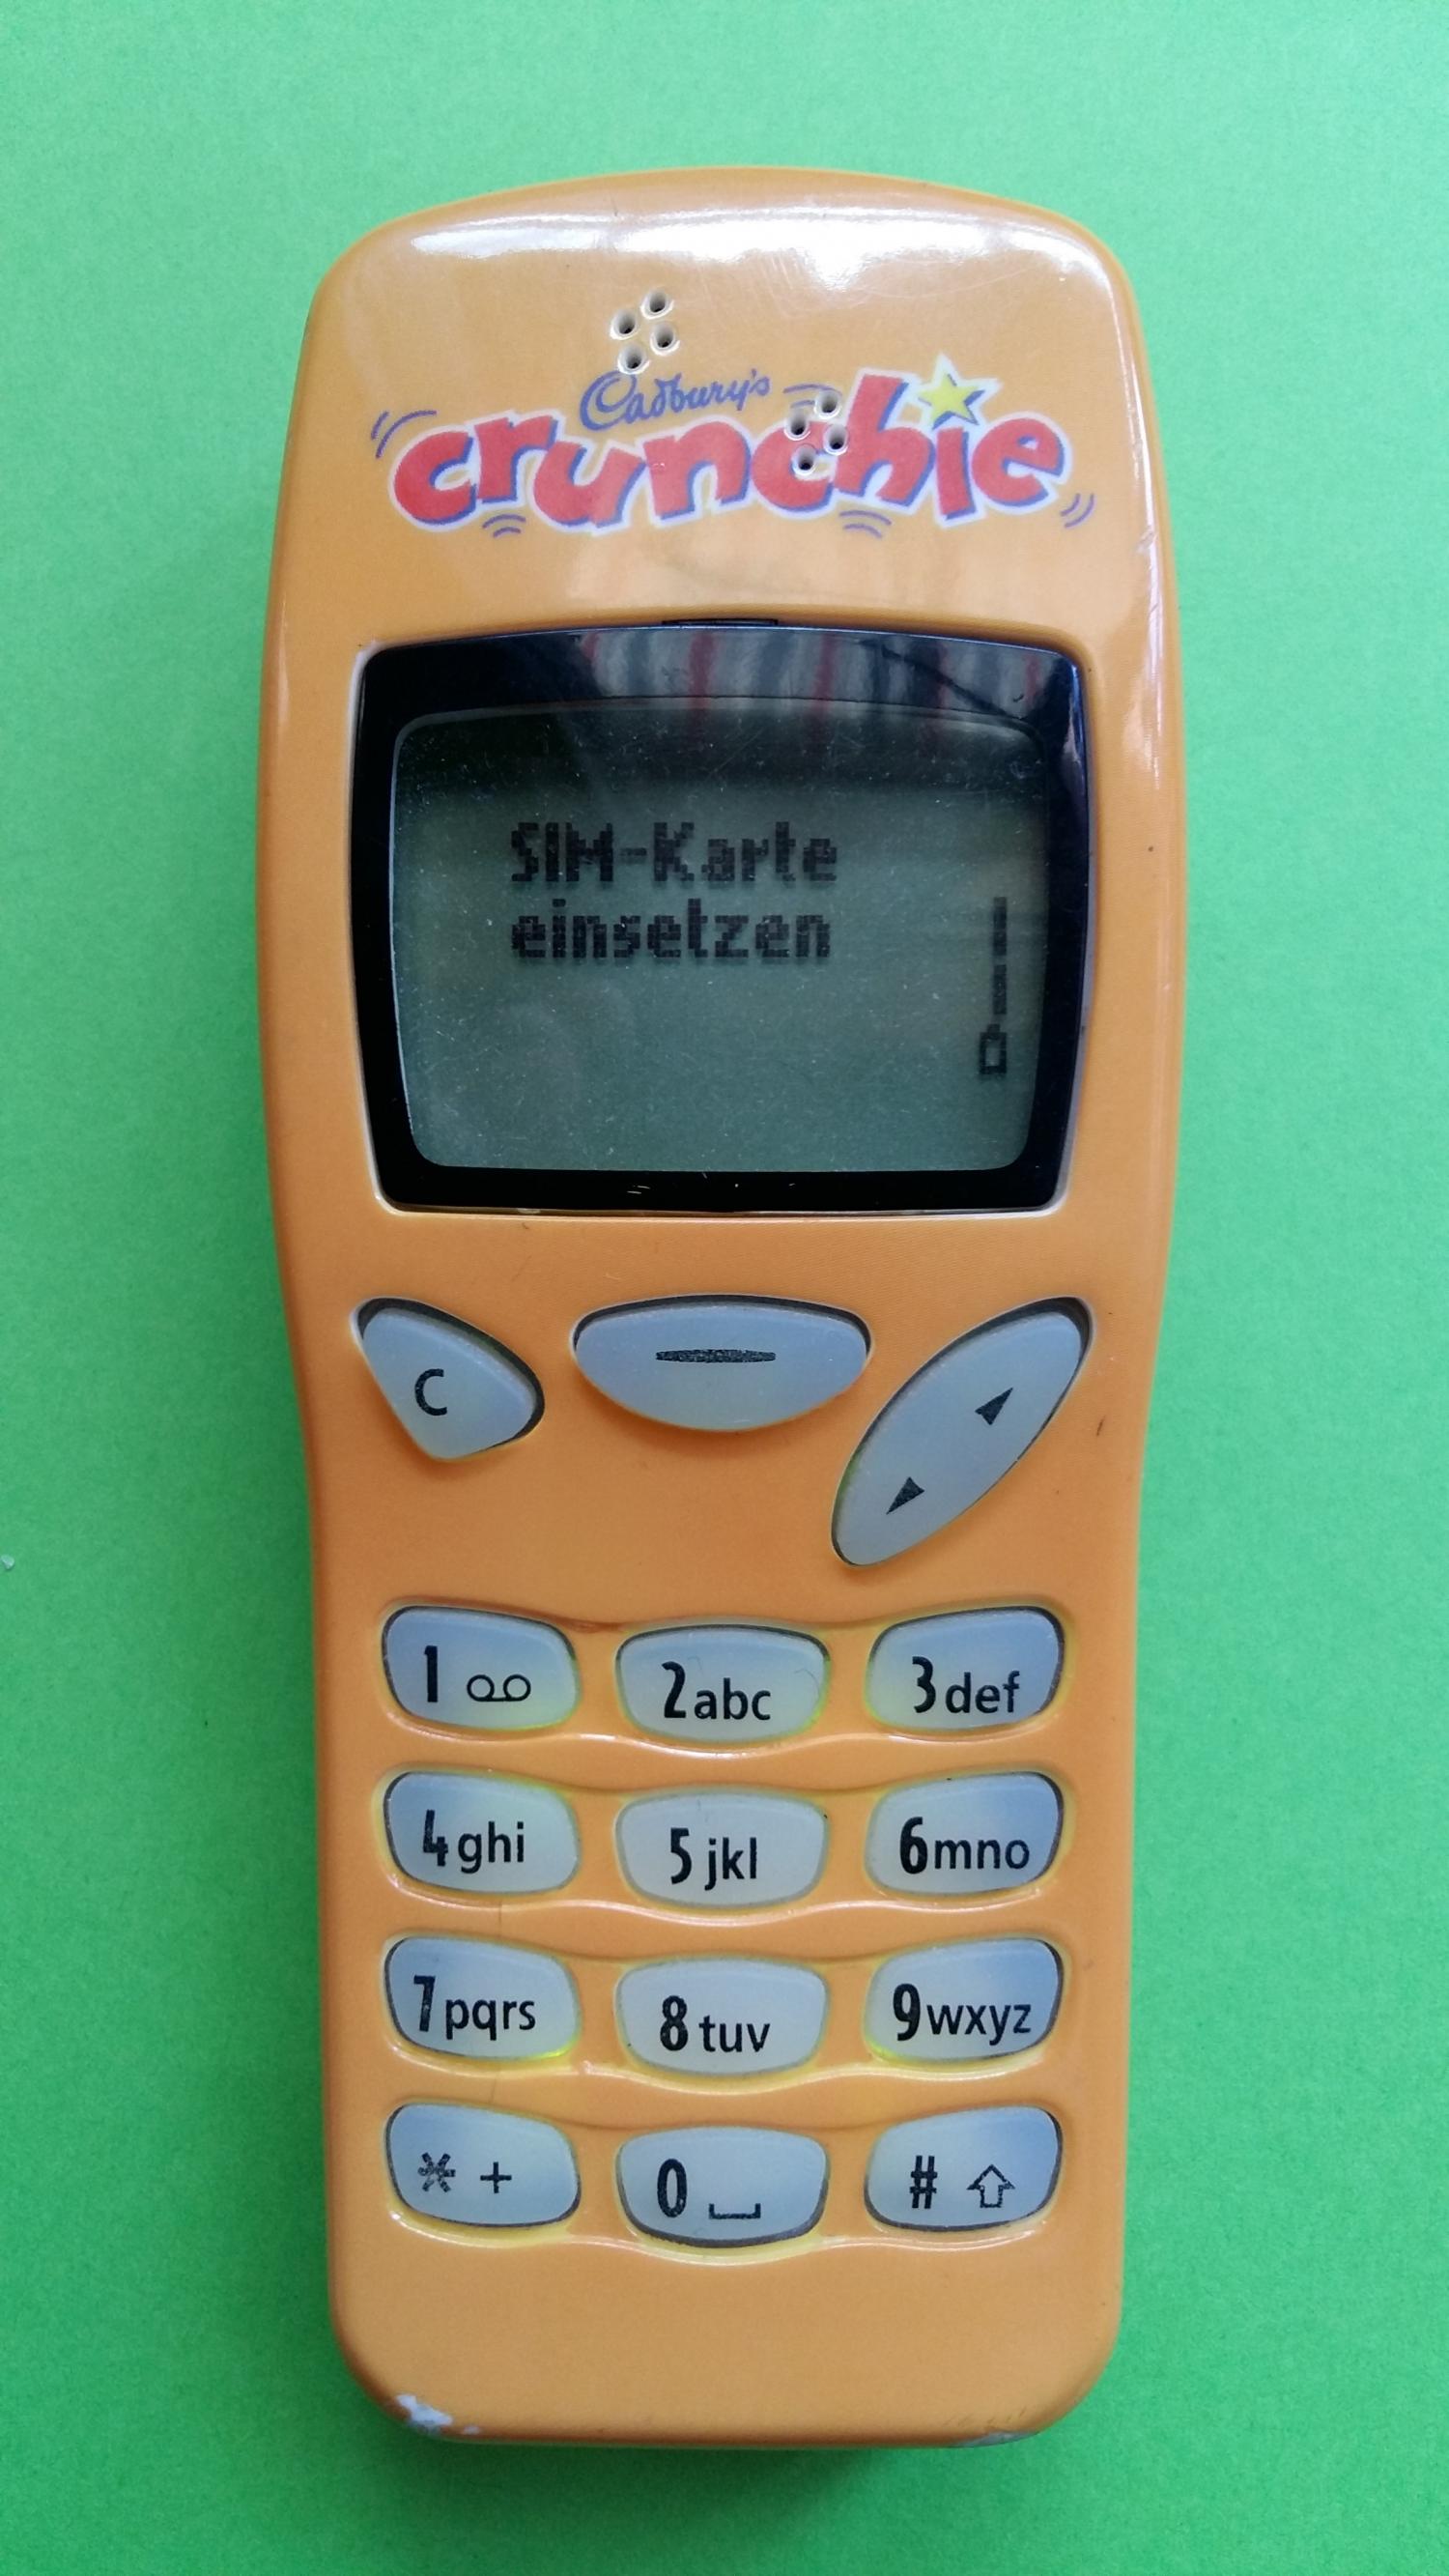 image-7305556-Nokia 3210 (5)1.jpg